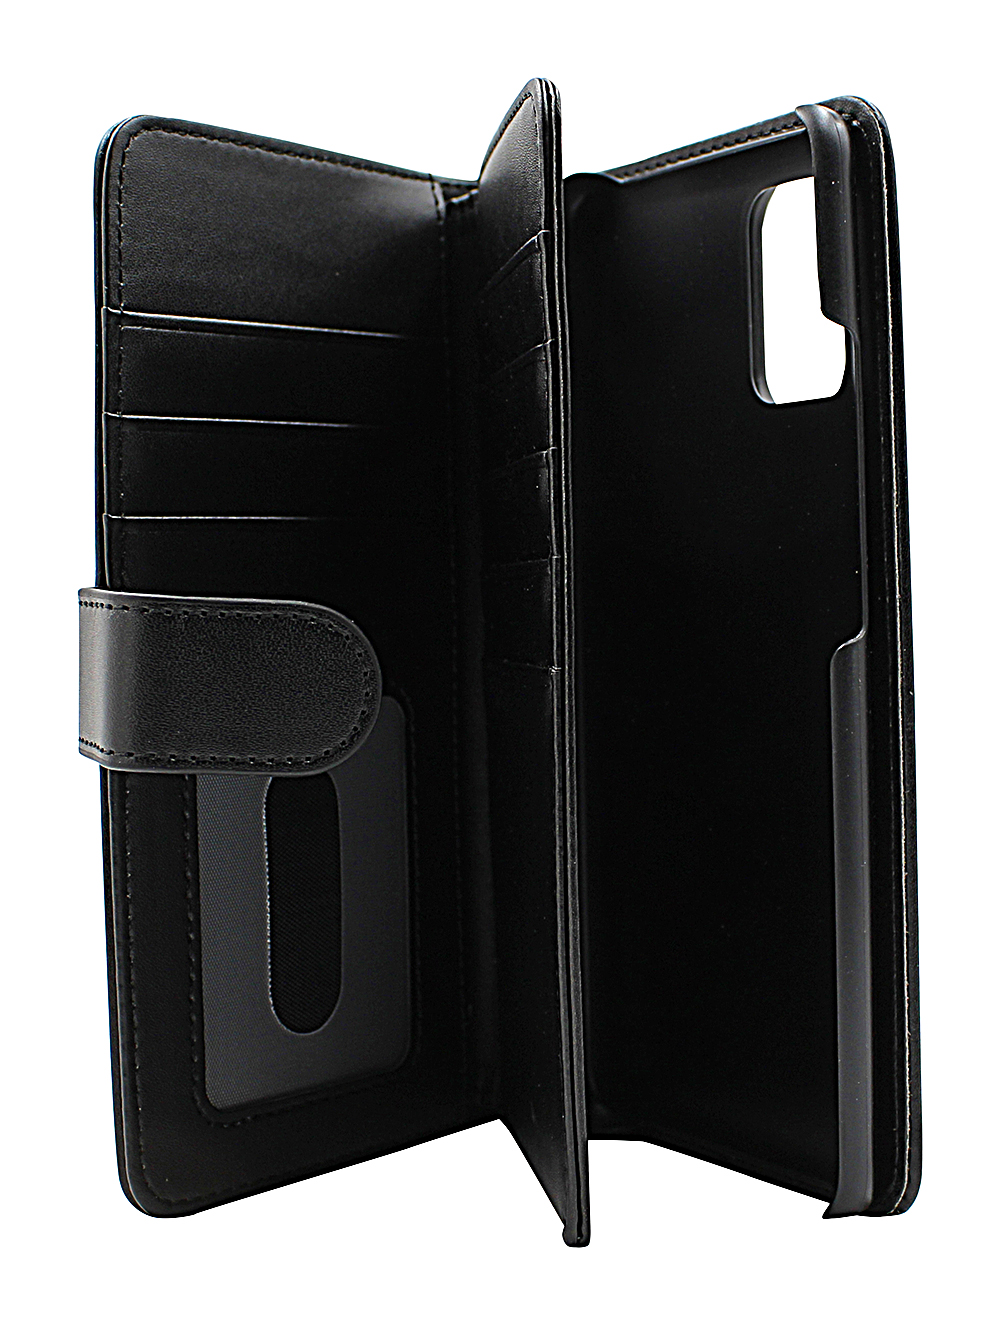 CoverInSkimblocker XL Wallet Samsung Galaxy A51 5G (A516B/DS)